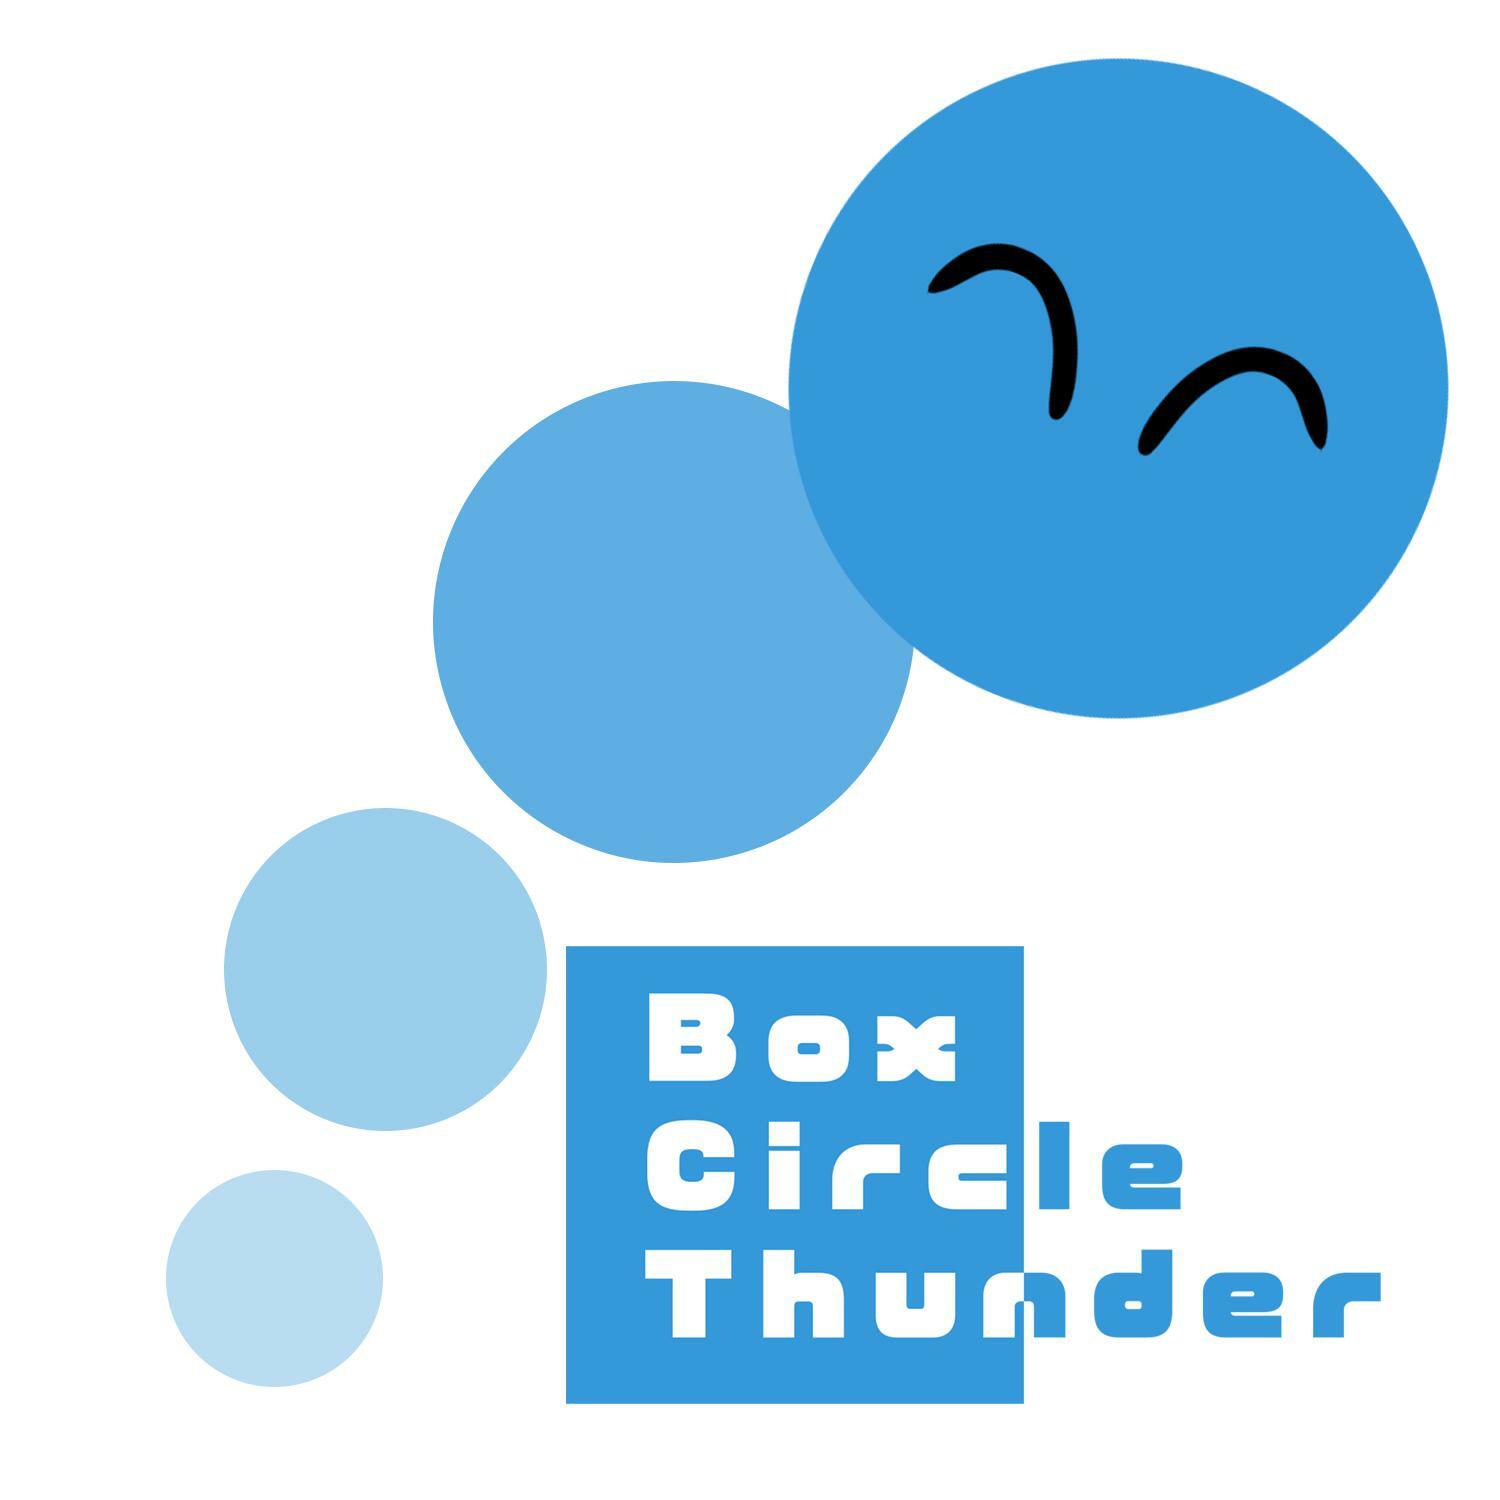 Circle box